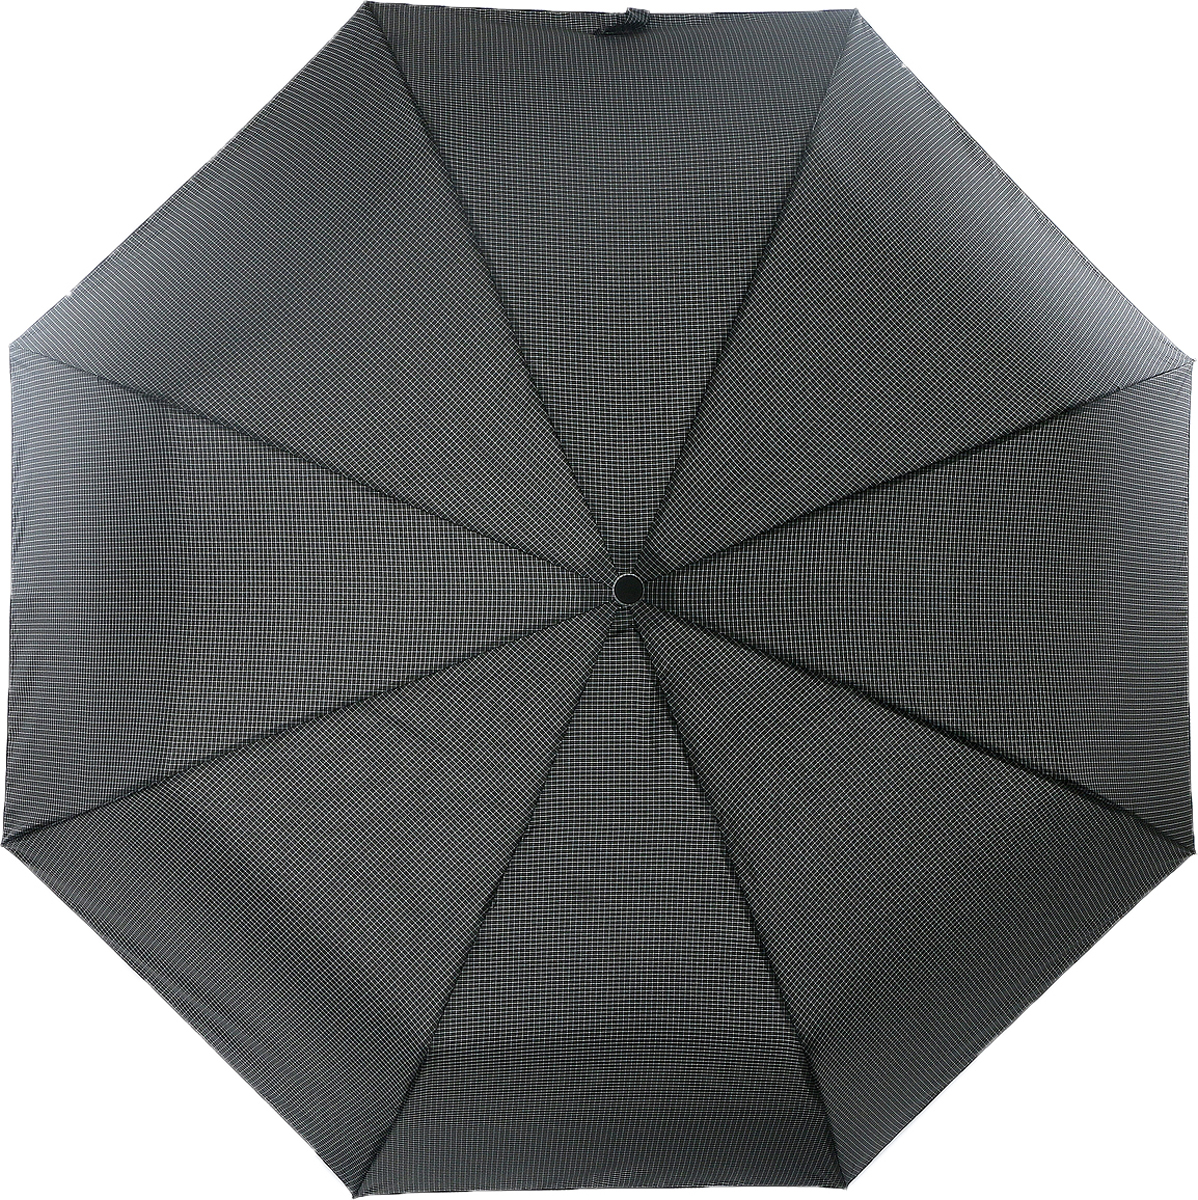 Зонт мужской Magic Rain, автомат, 3 сложения, цвет: черный, белый. 7027-1704